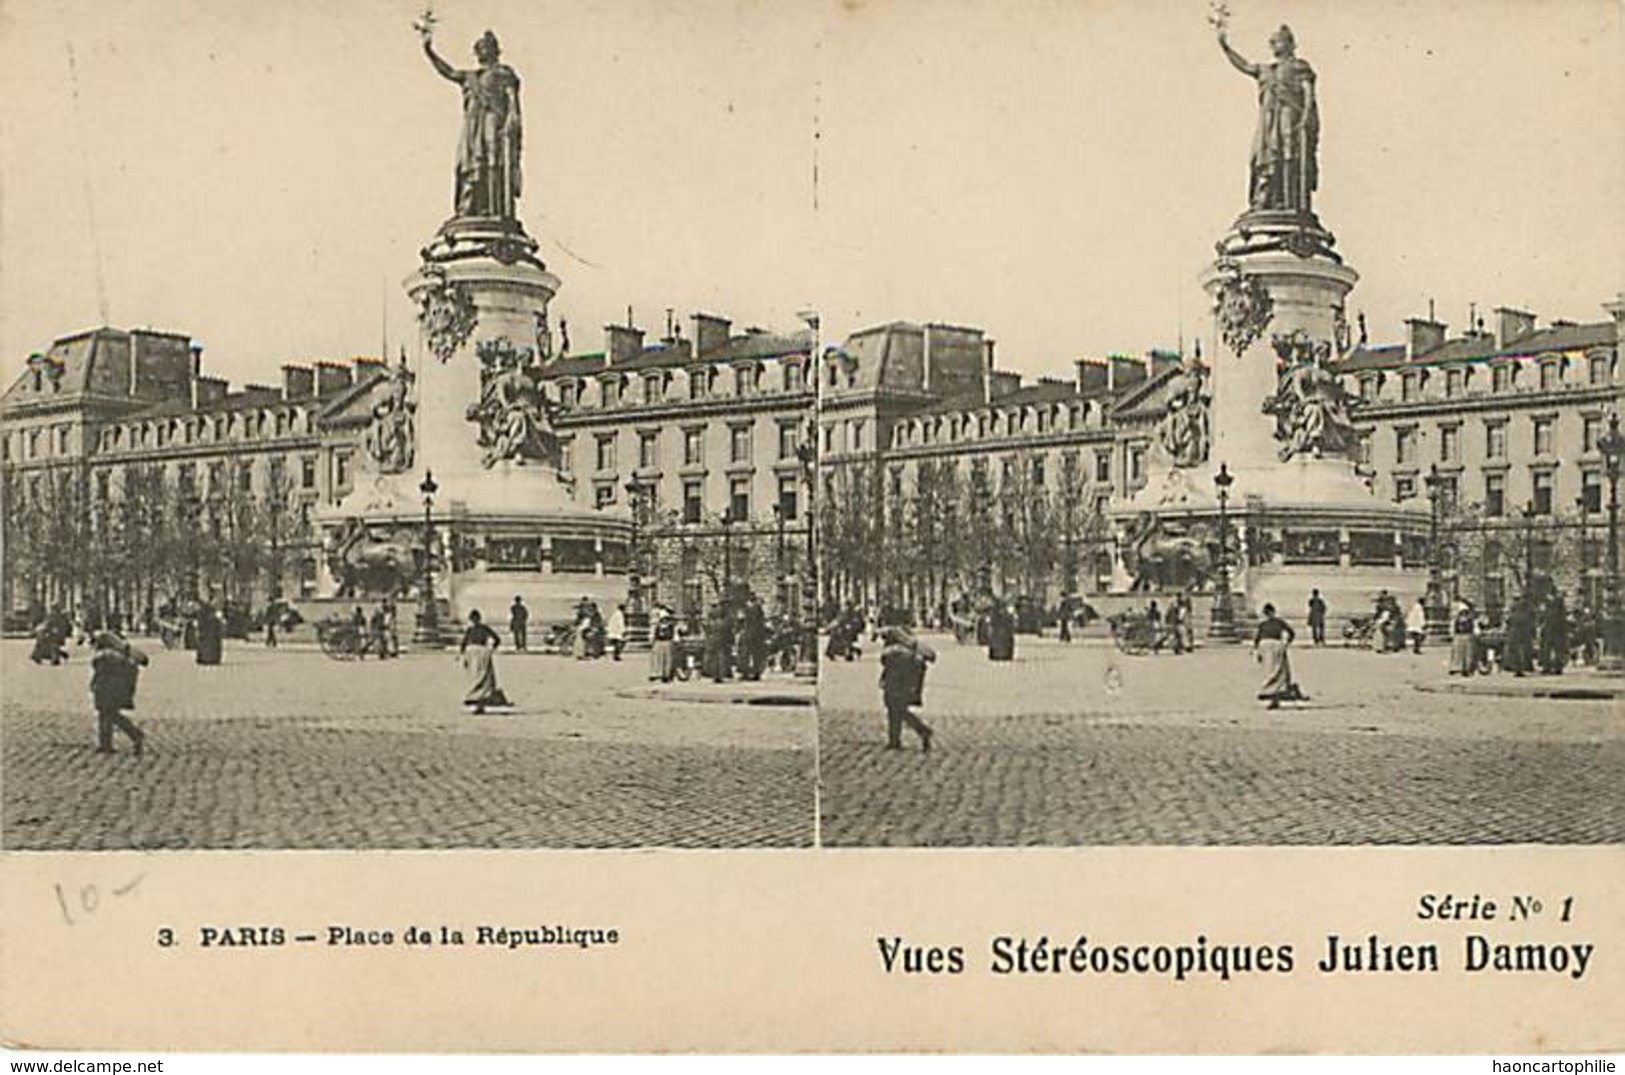 Paris lot de 28 cartes stéreo